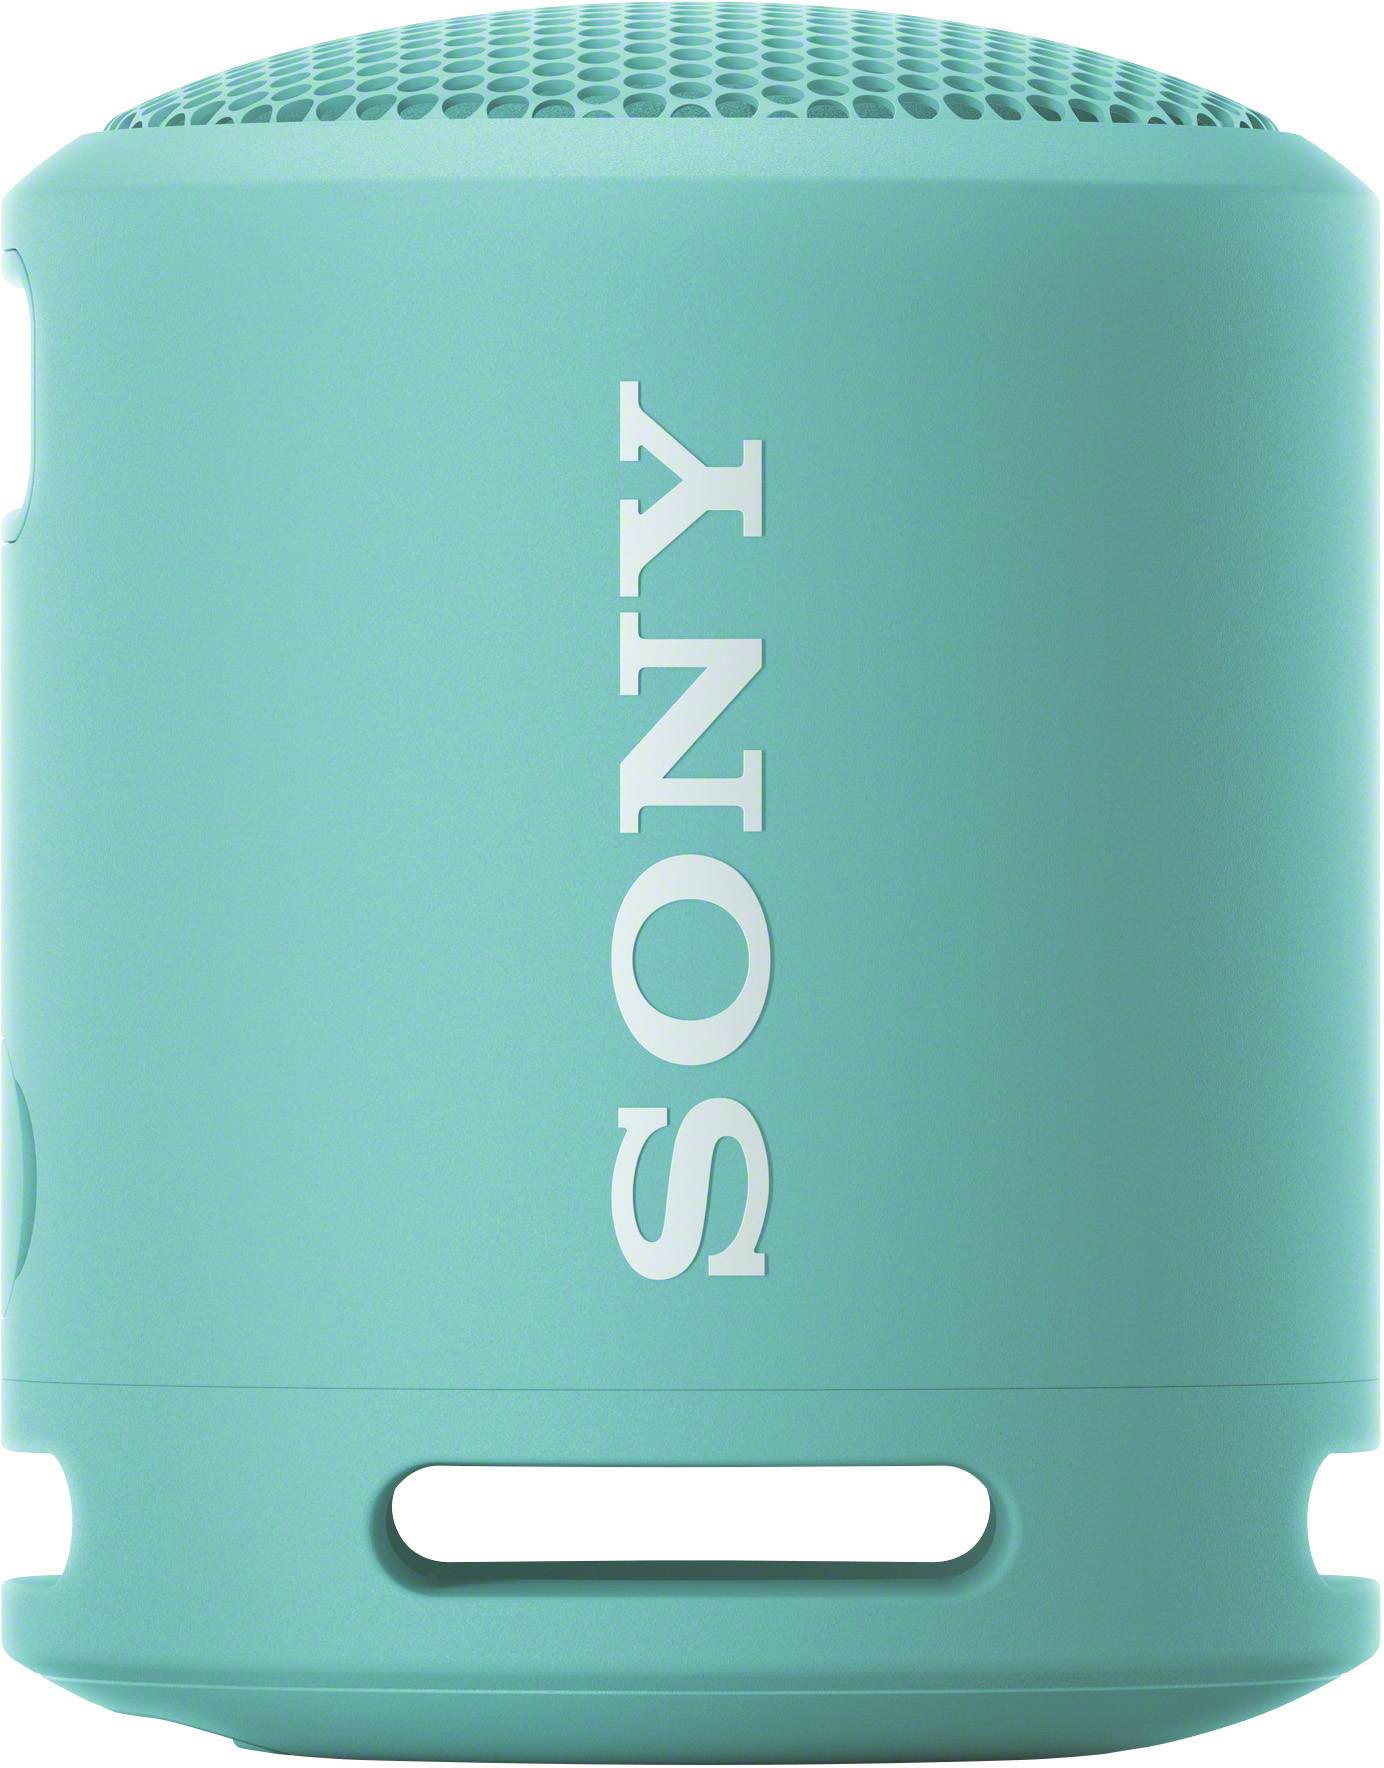 Sony SRS-XB13 Bluetooth® Lautsprecher Freisprechfunktion, staubfest,  Wasserfest Hellblau kaufen